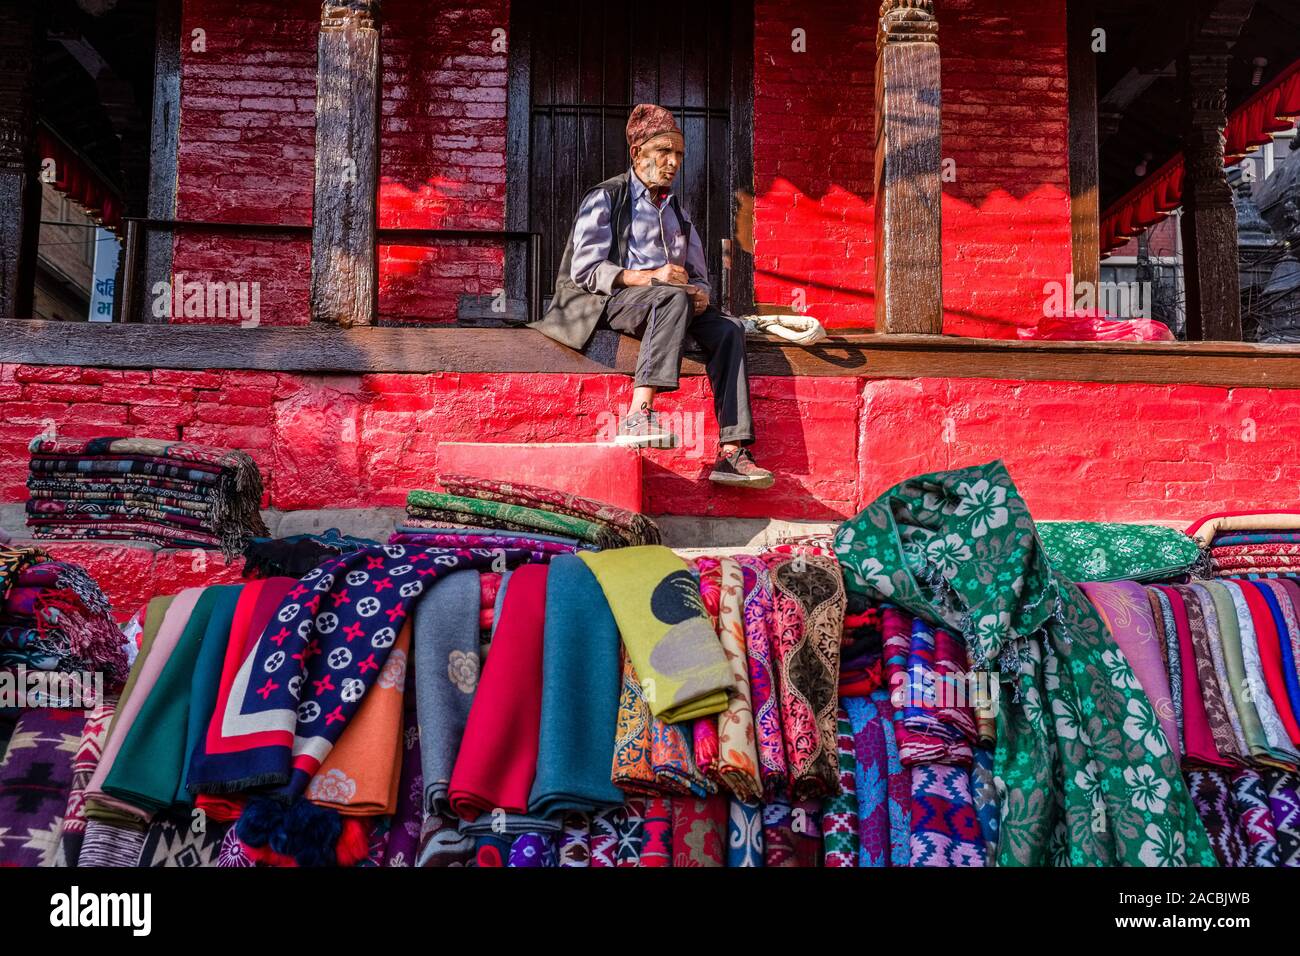 Vendeur de rue, la vente de vêtements et de tissus au marché local Banque D'Images